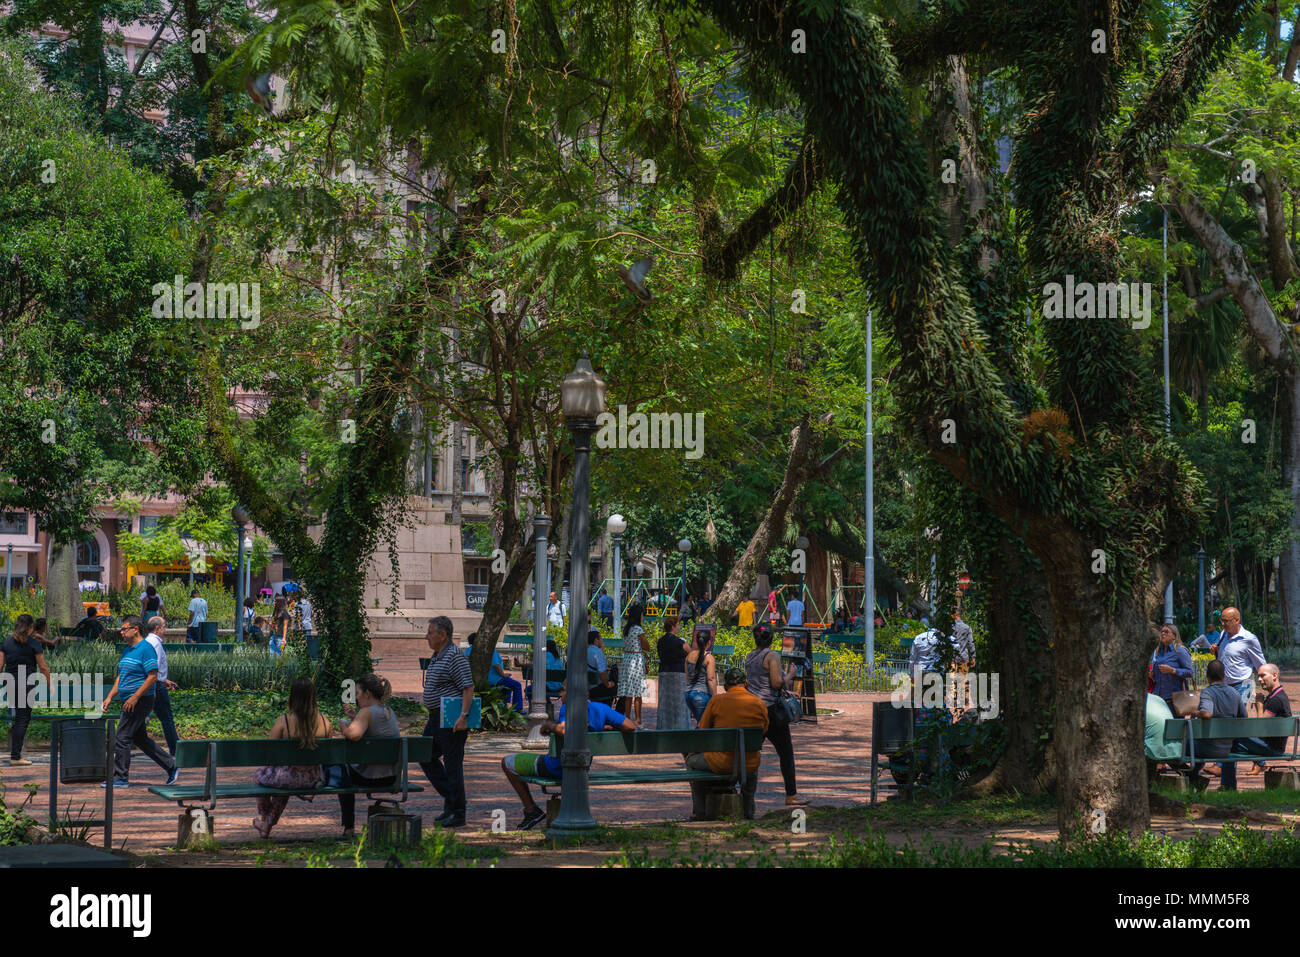 La vie quotidienne dans le centre ville animé, Porto Alegre, Rio Grande do Sul, Brésil, Amérique Latine Banque D'Images